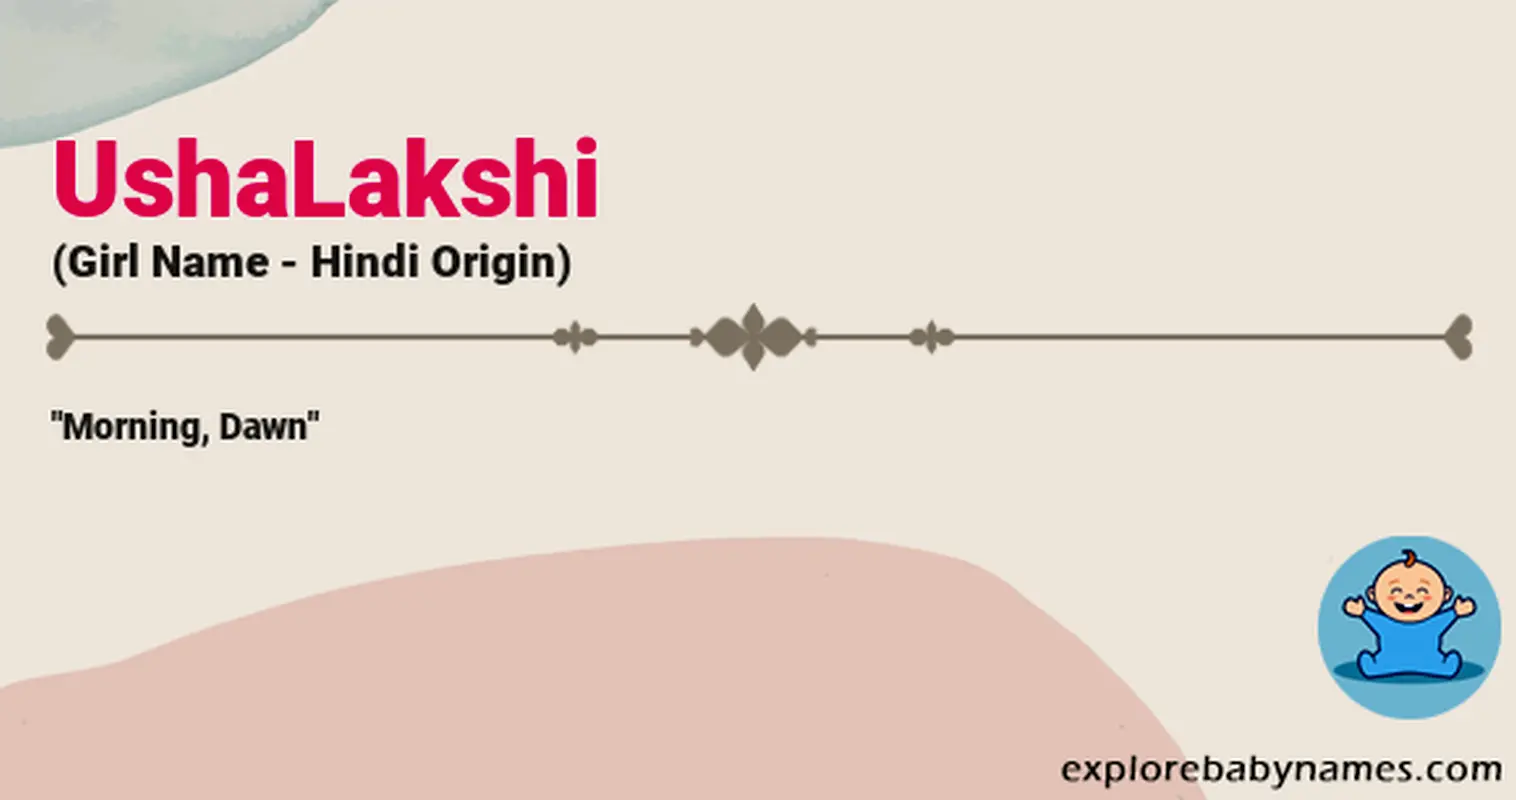 Meaning of UshaLakshi